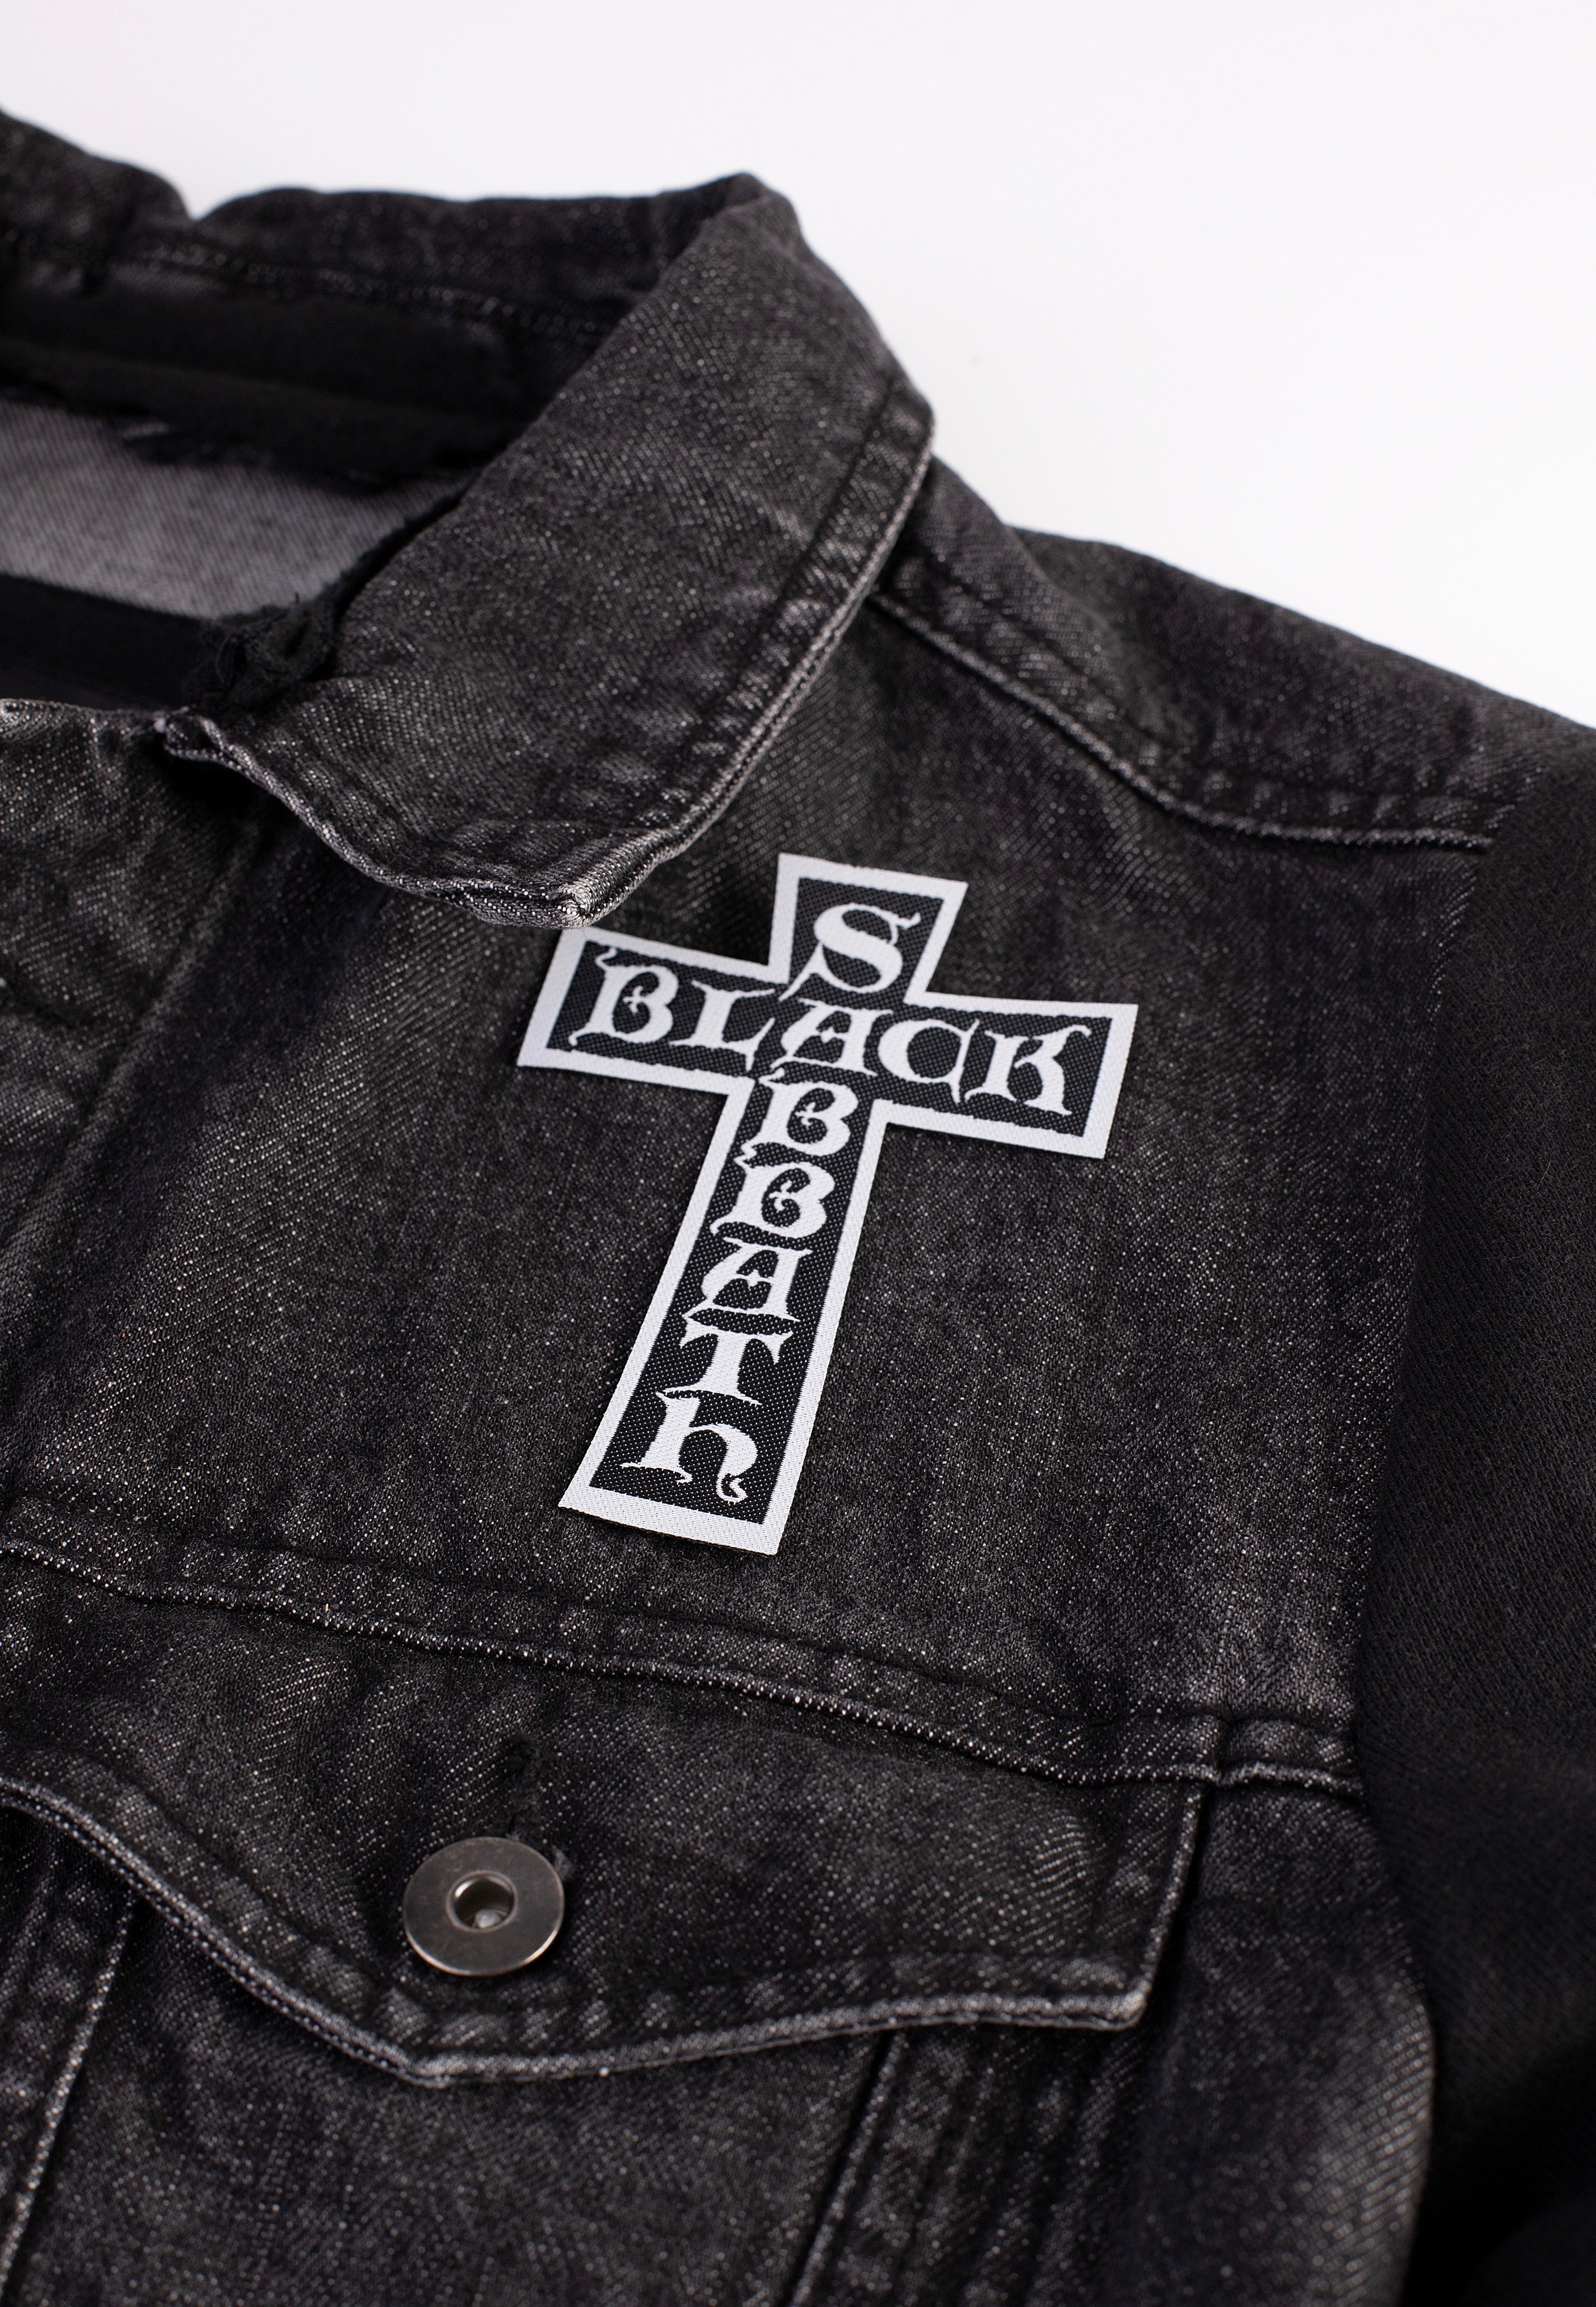 Black Sabbath - Cross Logo Cut Out - Patch | Neutral-Image